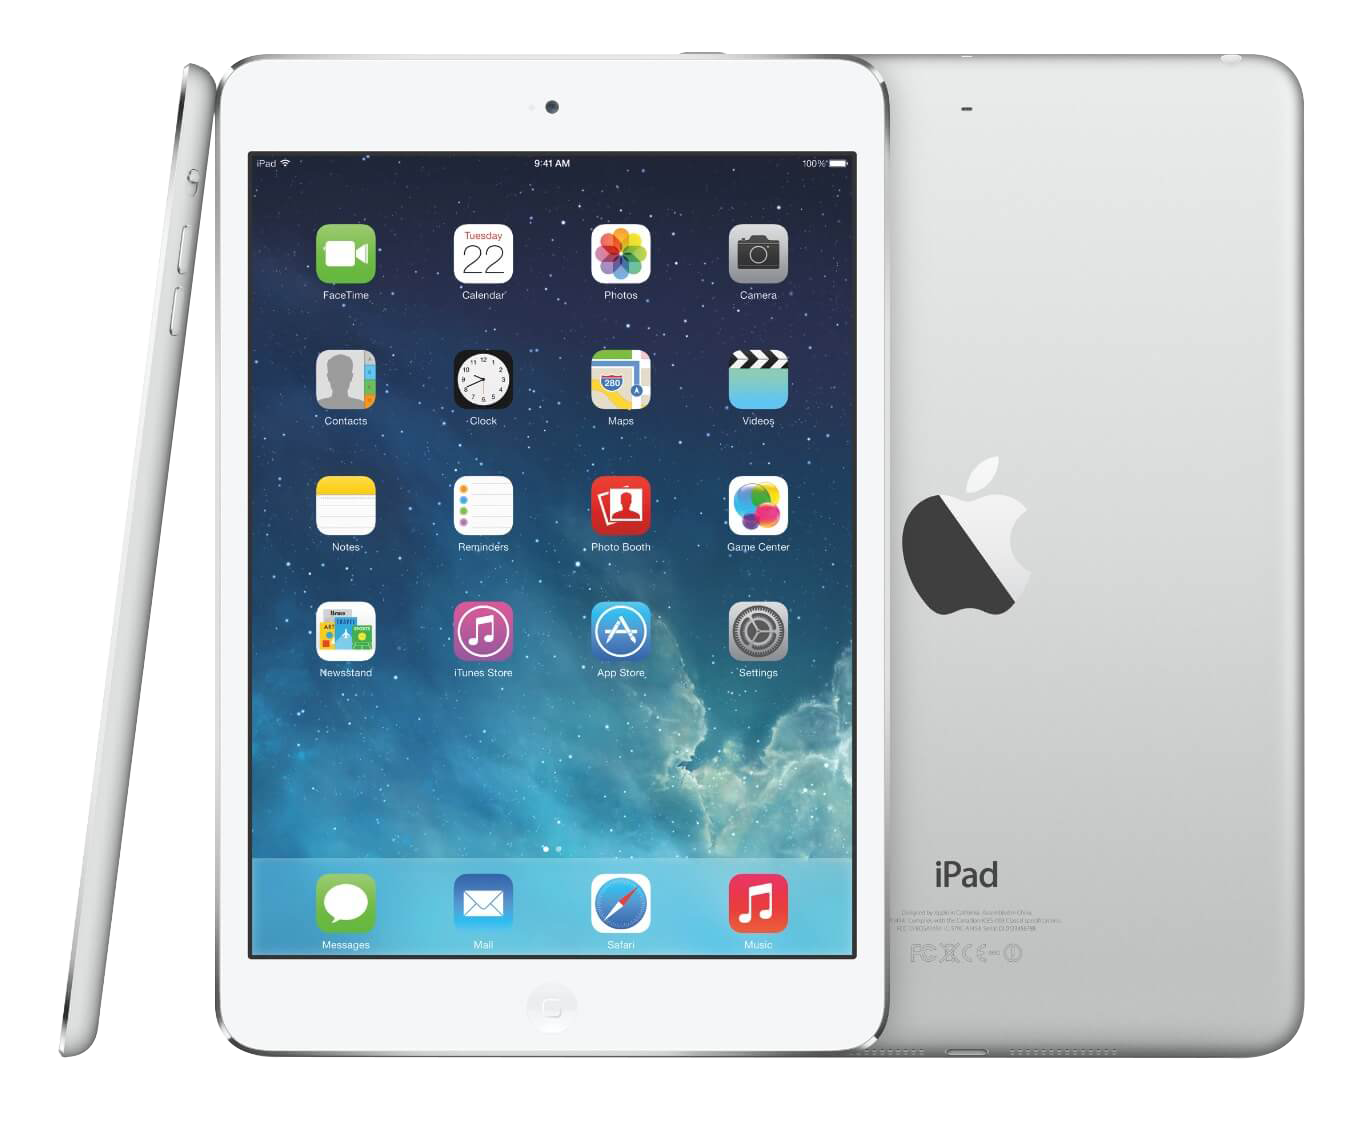 vride slack Shetland Billig brugt Apple iPad Air - Køb genbrugt IT i høj kvalitet - Datamarked.dk